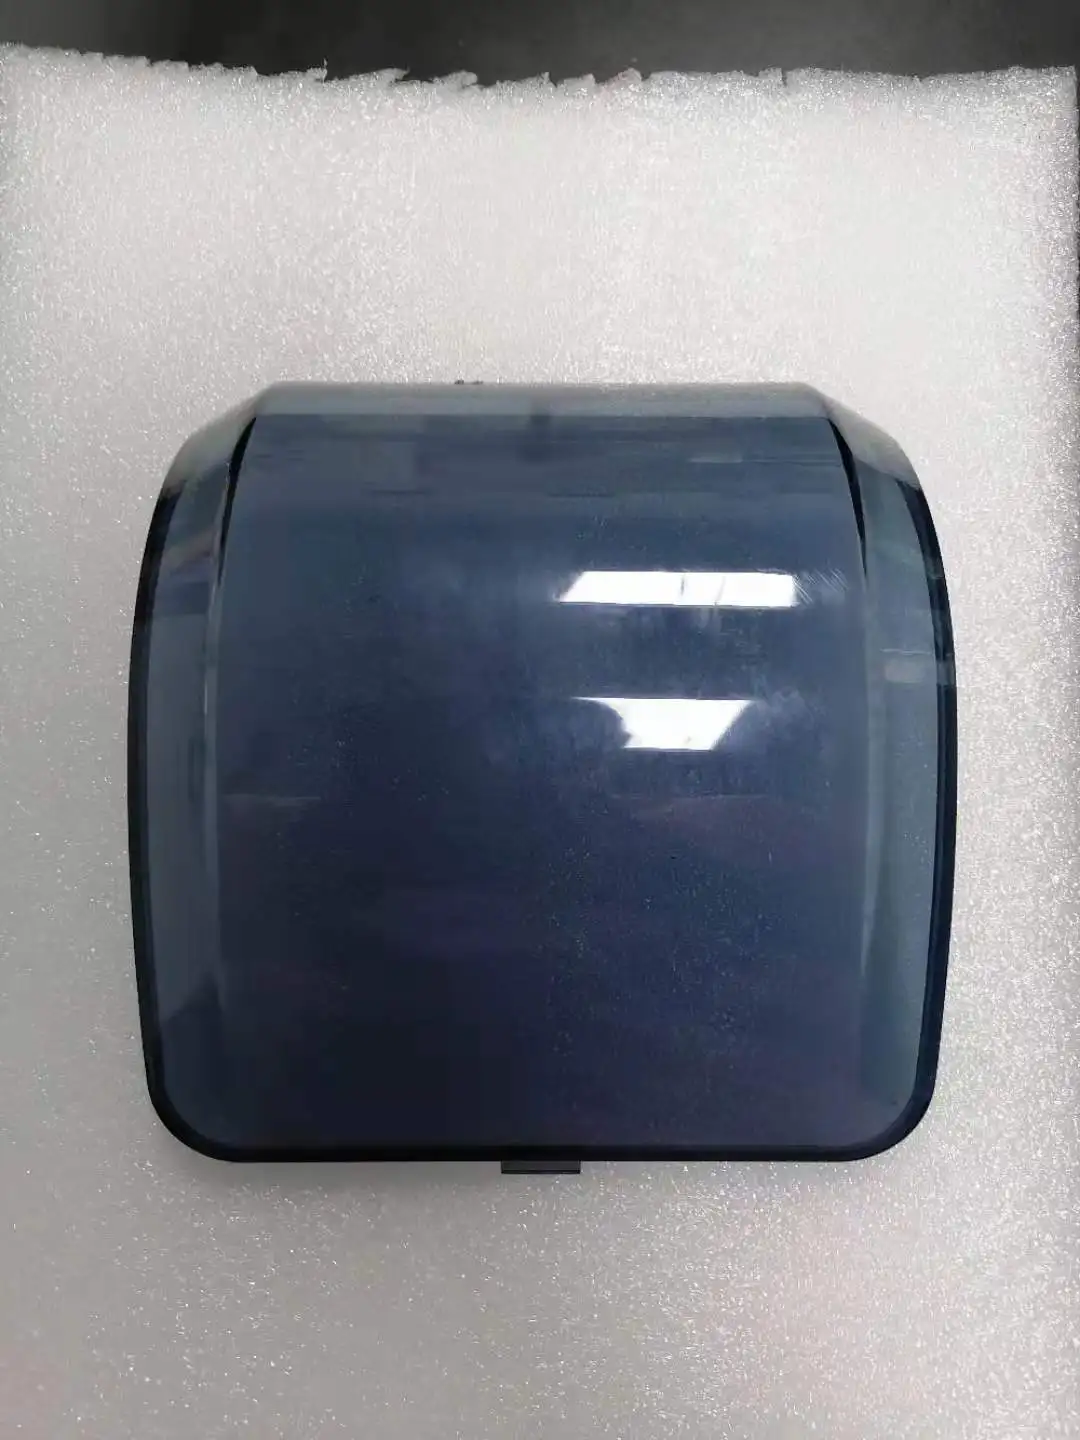 Принтеры для этикеток Zebra GK420d gx420d gx430d ZP450 ZP500, прозрачная крышка, пылезащитное покрытие, окно (прямая тепловая) 105934-001